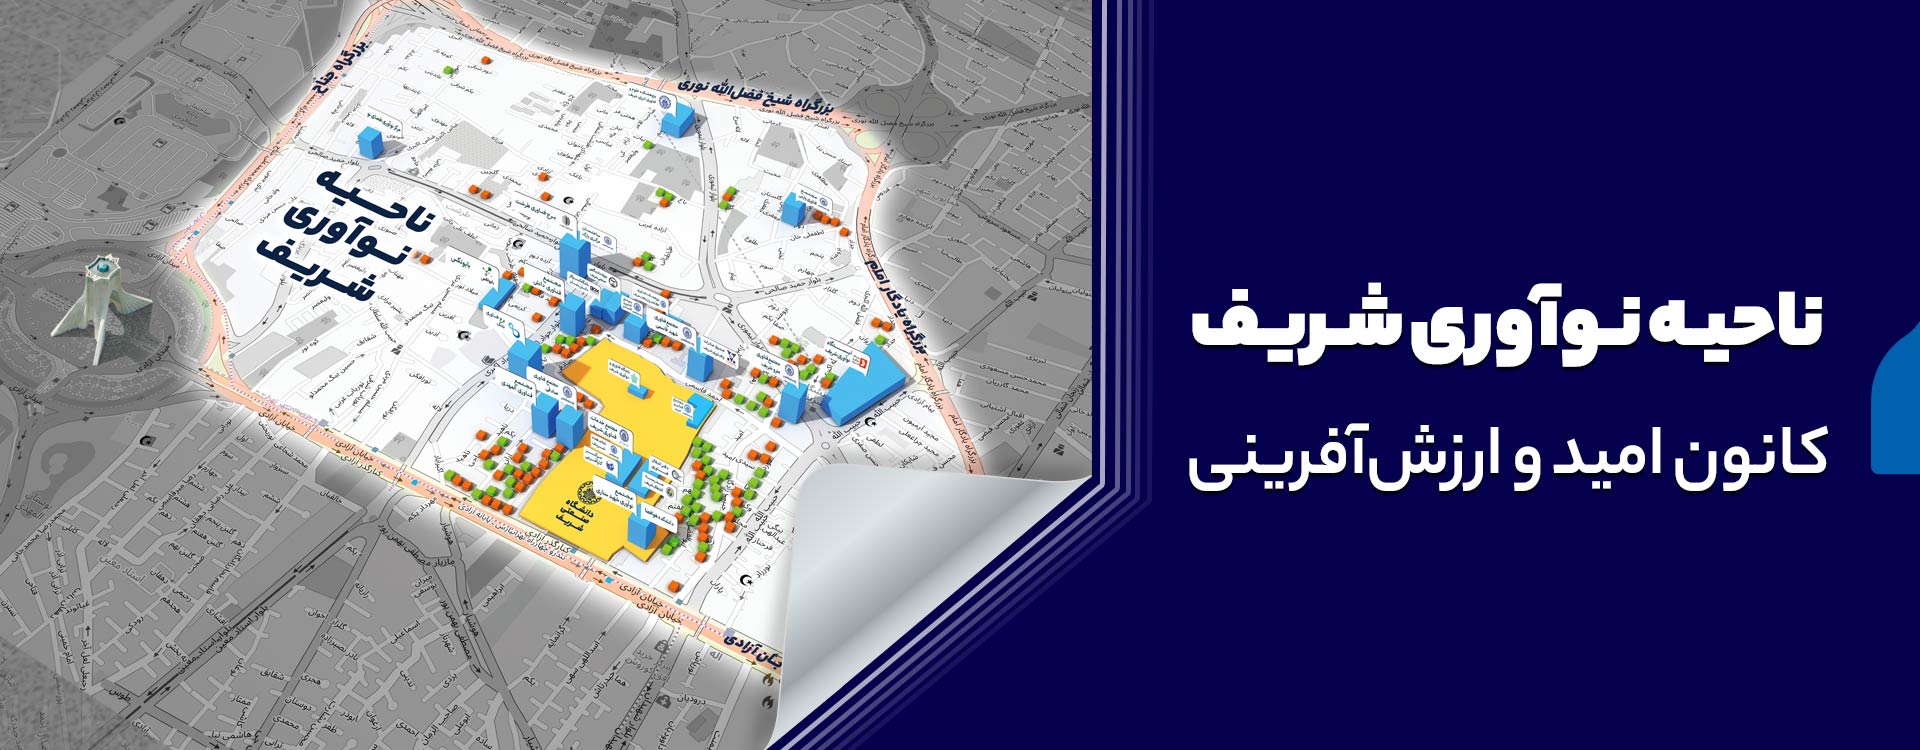 پارک علم و فناوری دانشگاه صنعتی شریف کانون امید و ارزش آفرینی